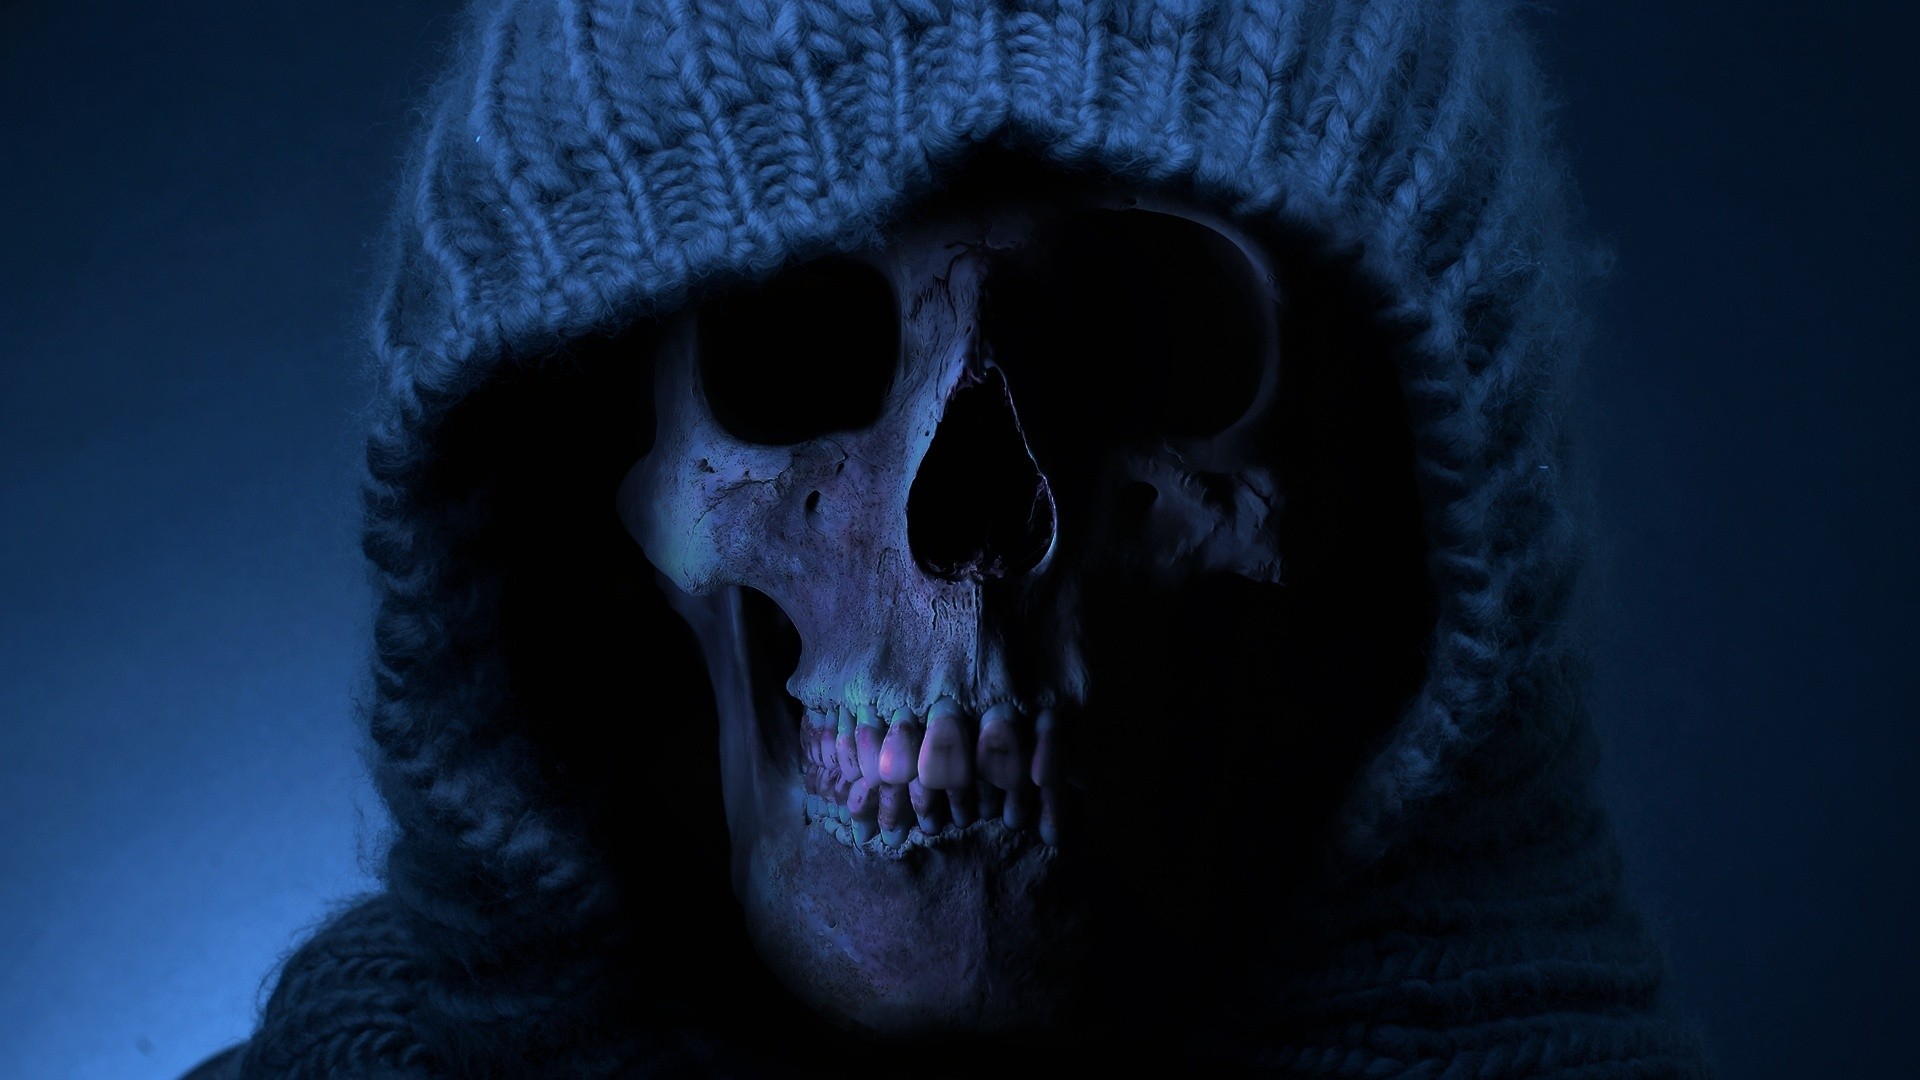 HD Skull Wallpapers 1080p - WallpaperSafari